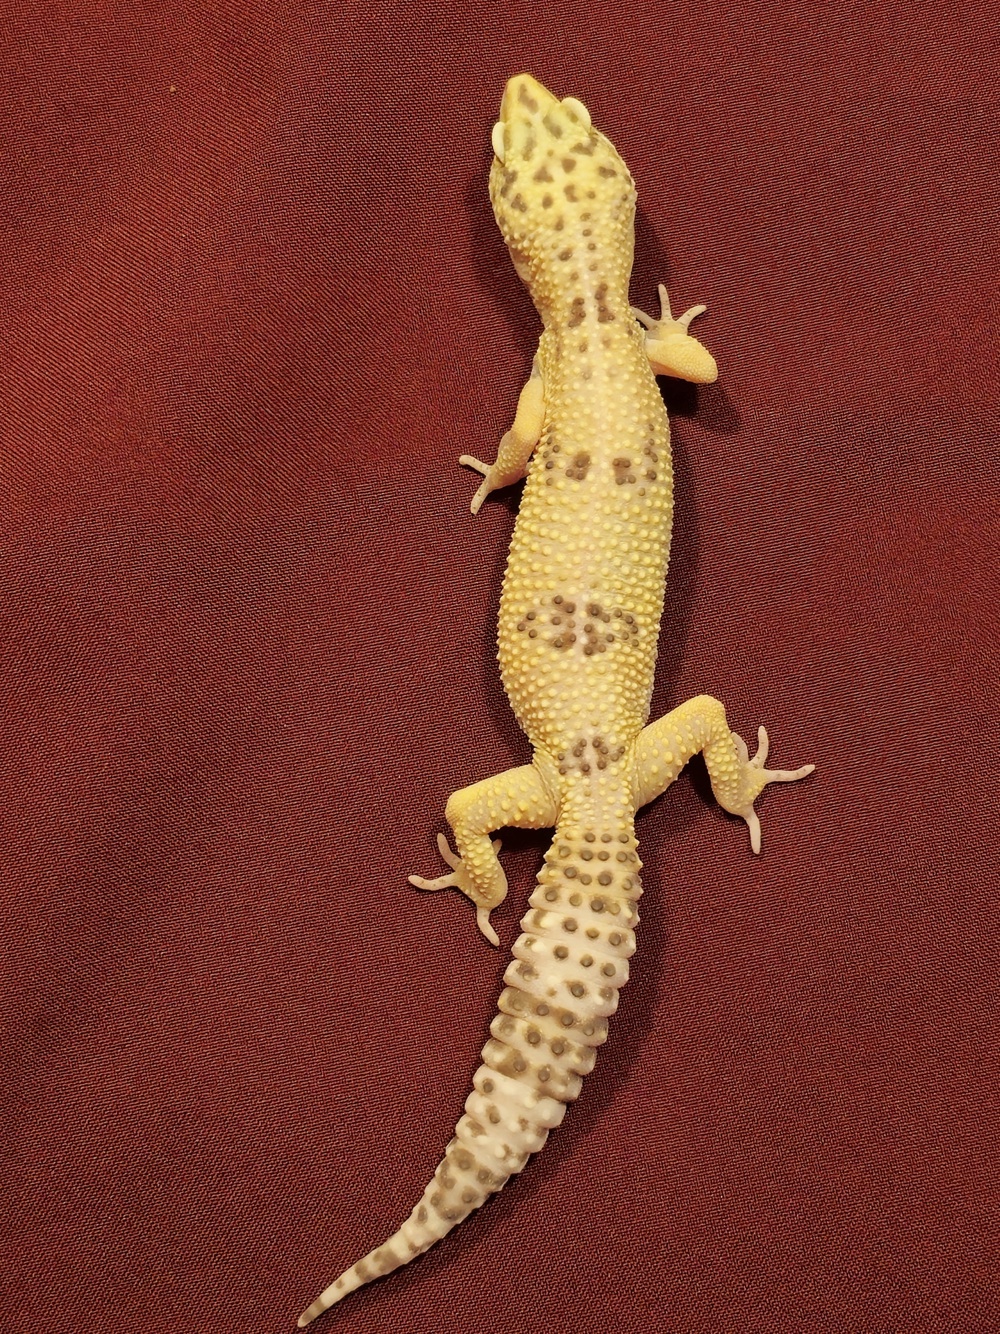 0.1 Leopardgecko 